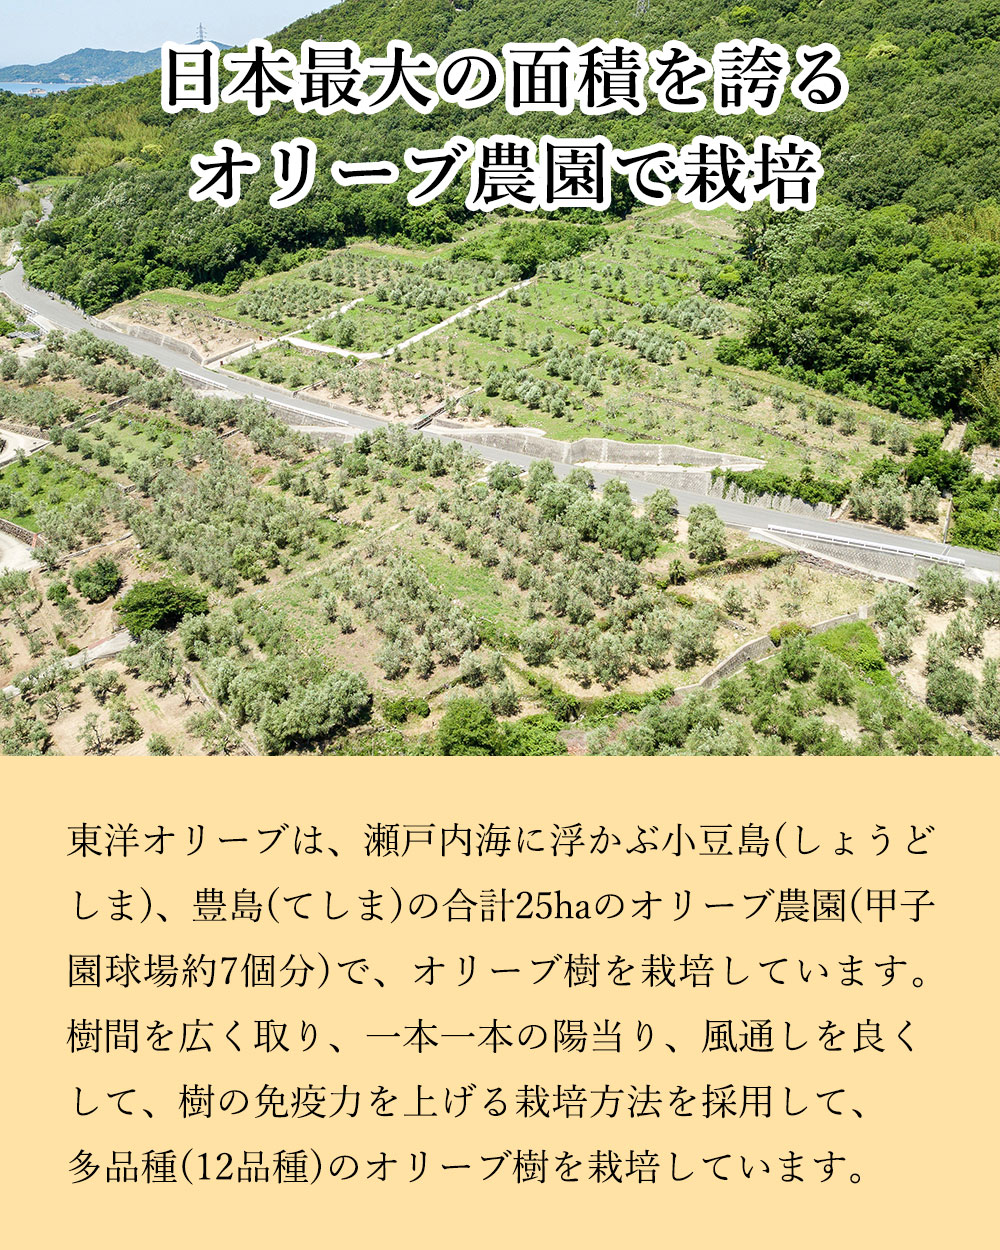 日本最大のオリーブ農園